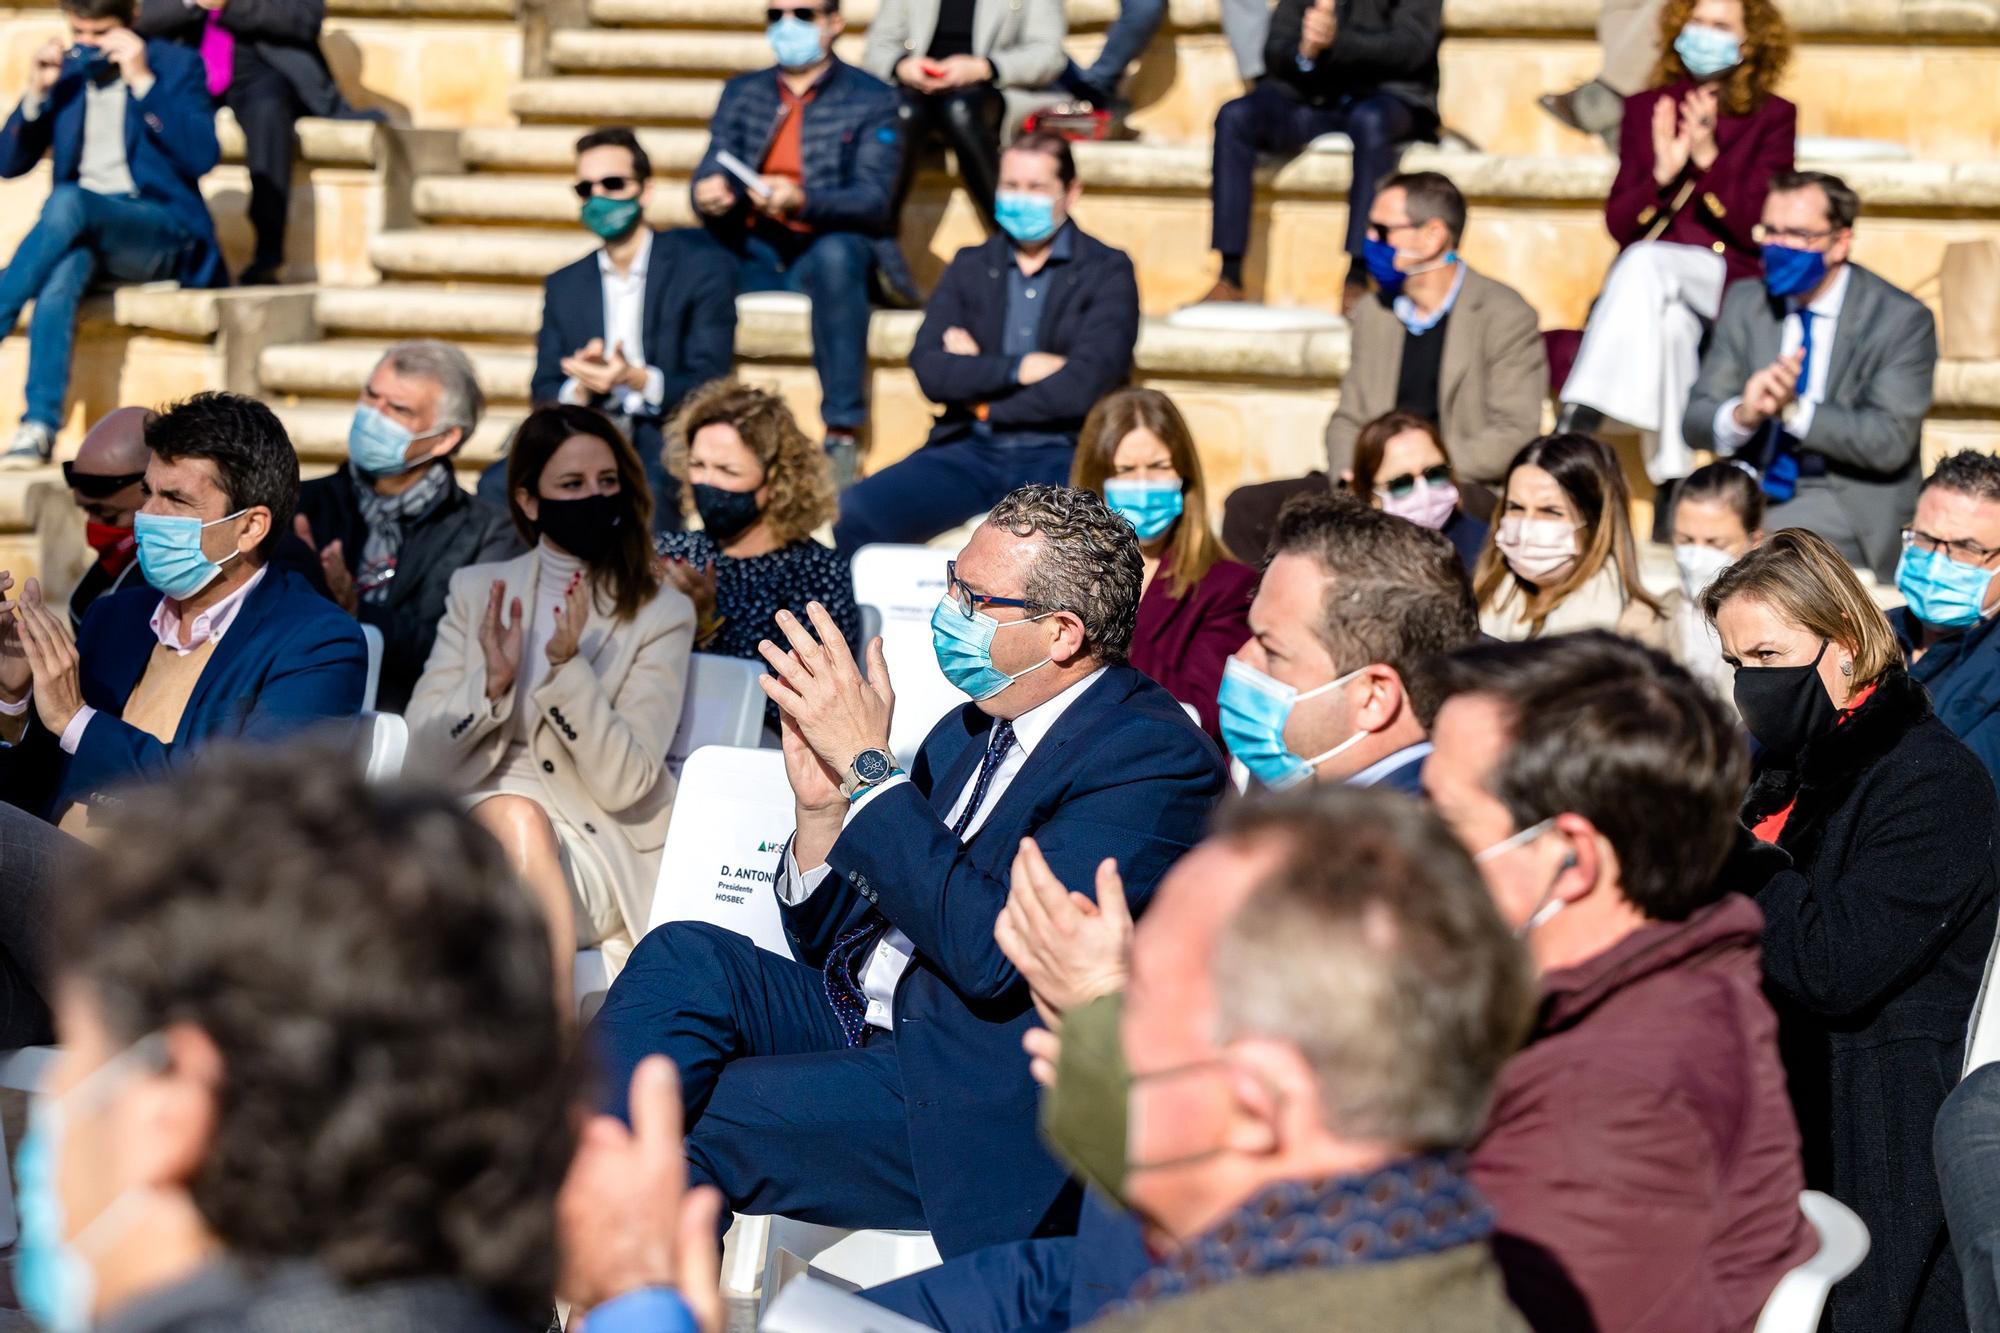 Al encuentro ha asistido el secretario de Turisme Comunitat Valenciana, Francesc Colomer; el presidente de la Diputación, Carlos Mazón; y el alcalde de Benidorm Toni Pérez entre otros representantes institucionales y empresariales.